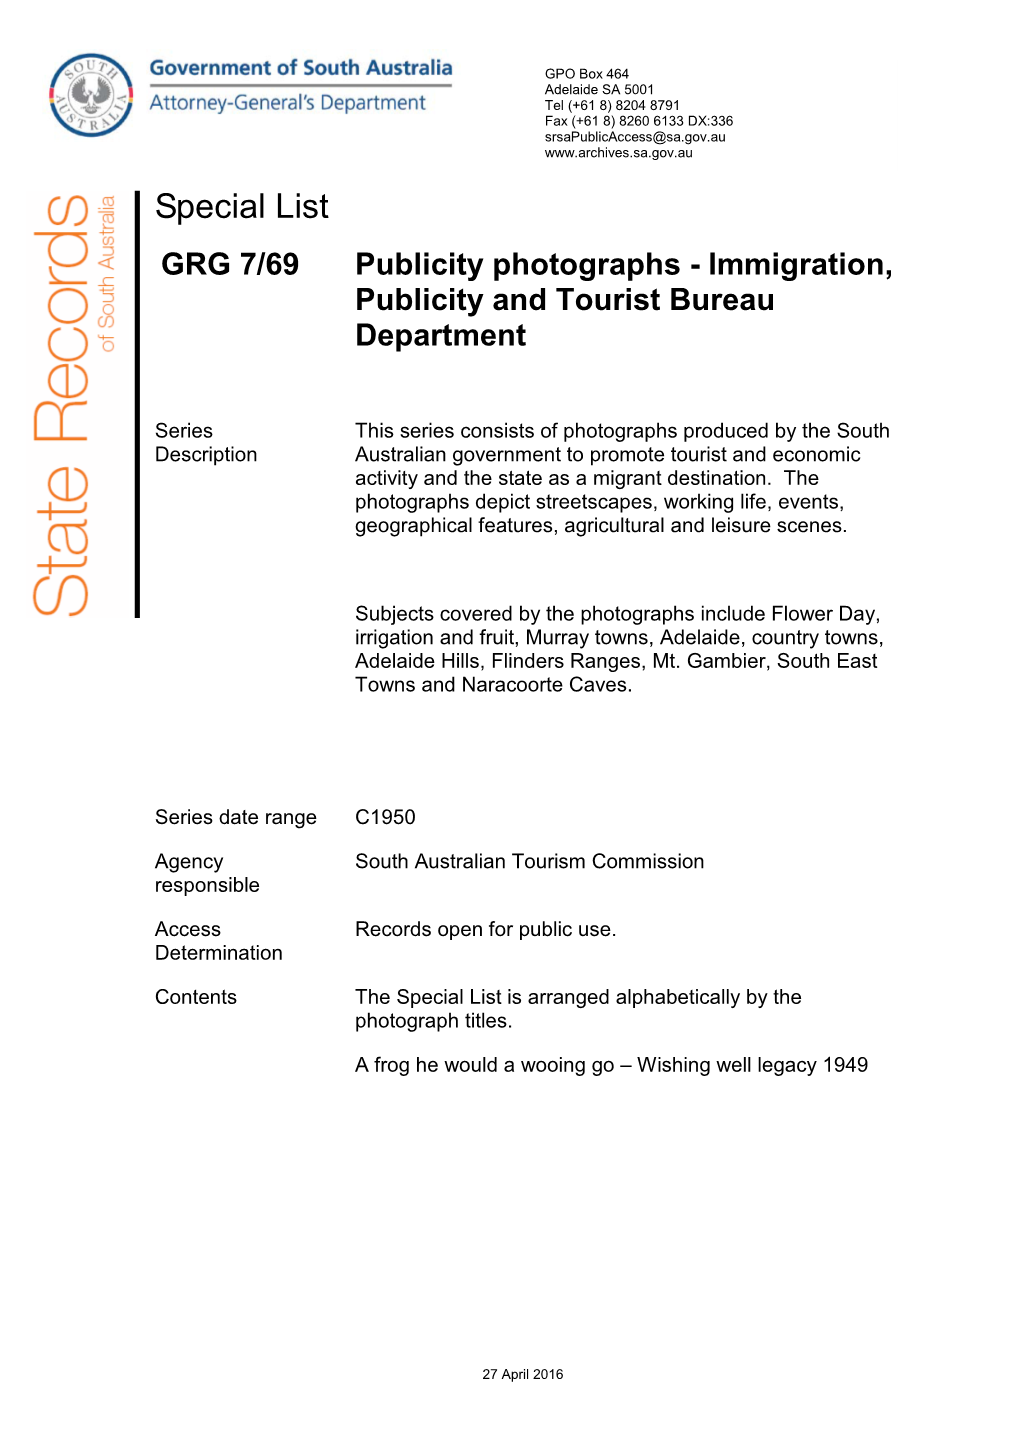 Immigration, Publicity and Tourist Bureau Department